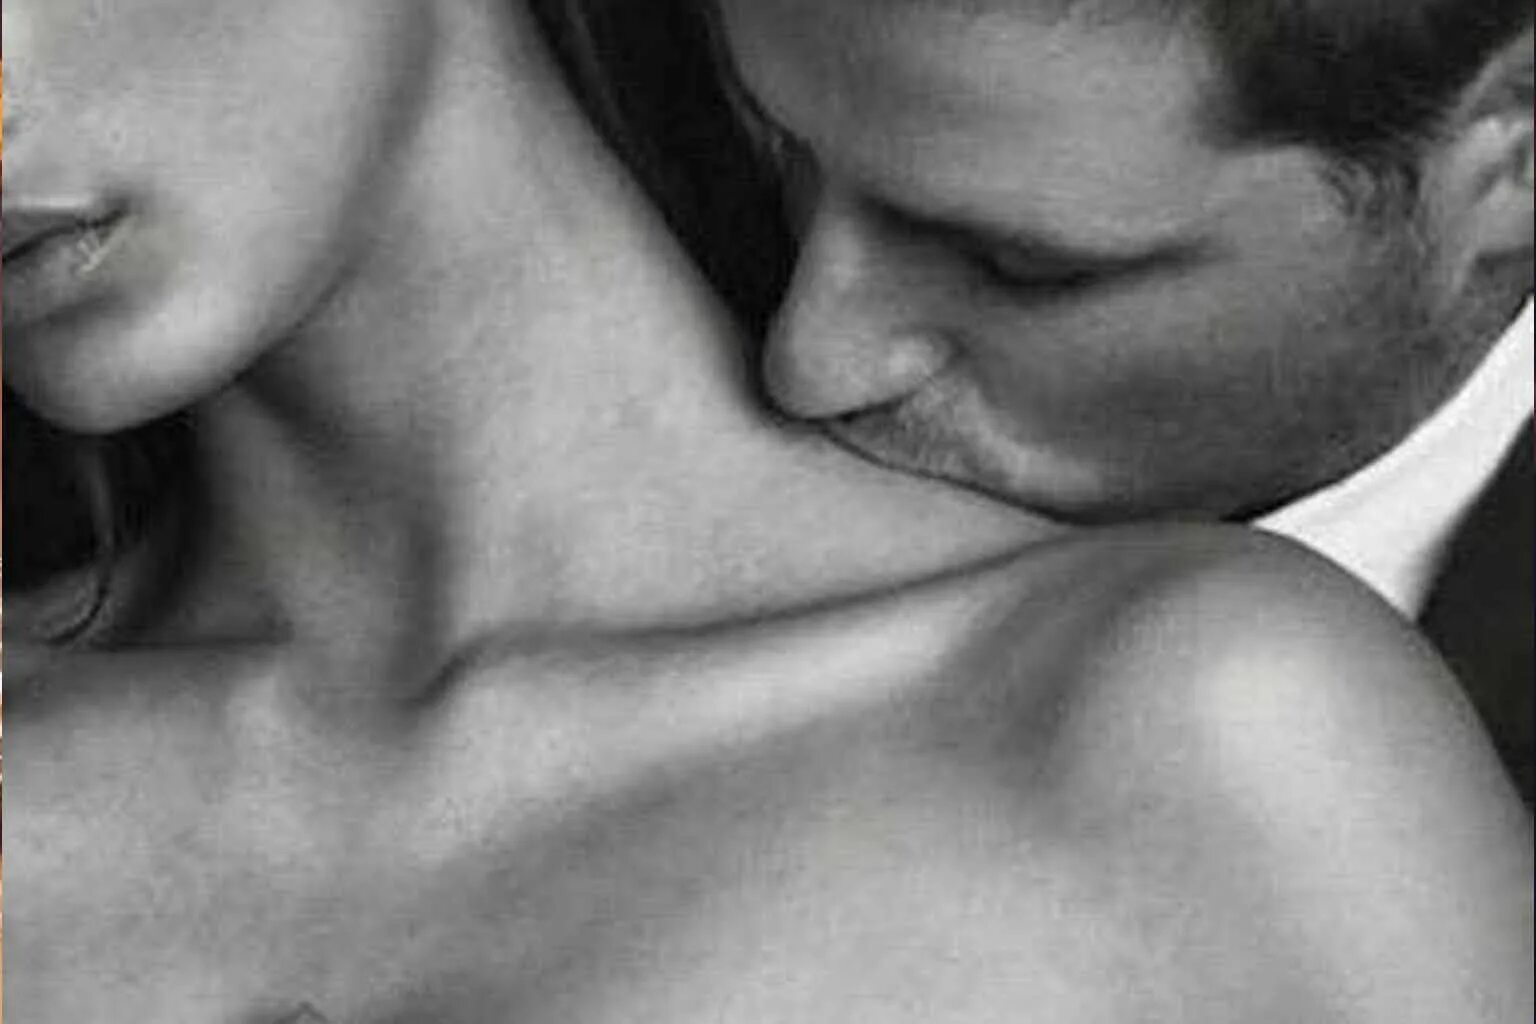 Hot sensual. Поцелуй в шею. Поцелуй в плечо. Нежный поцелуй в шею. Нежный поцелуй в плечо.